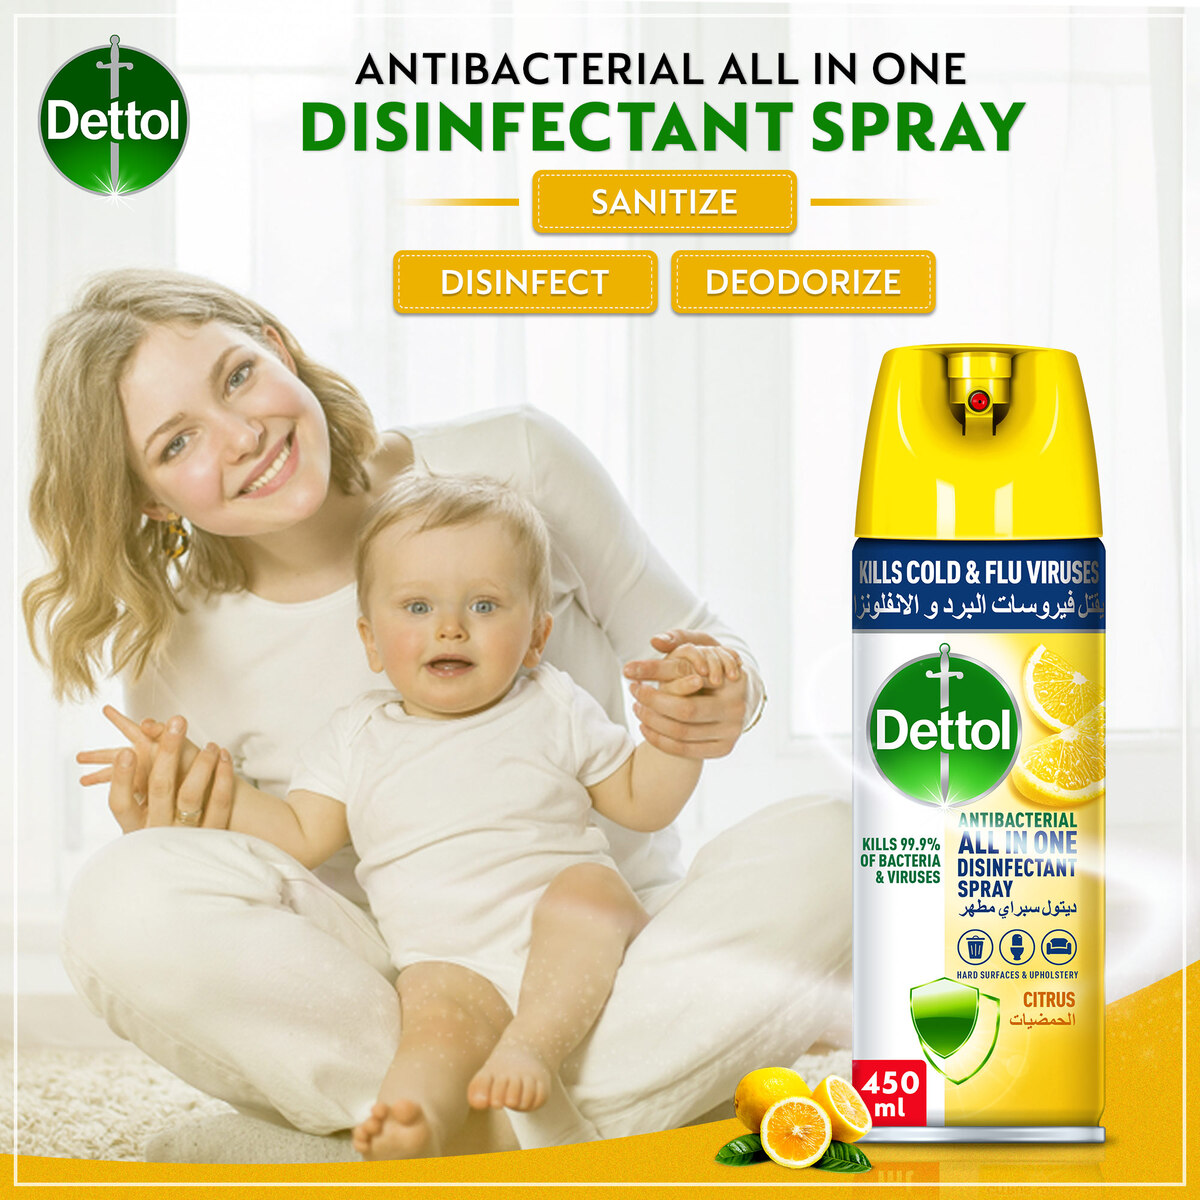 Dettol Citrus Antibacterial Disinfectant Spray Value Pack 2 x 450 ml